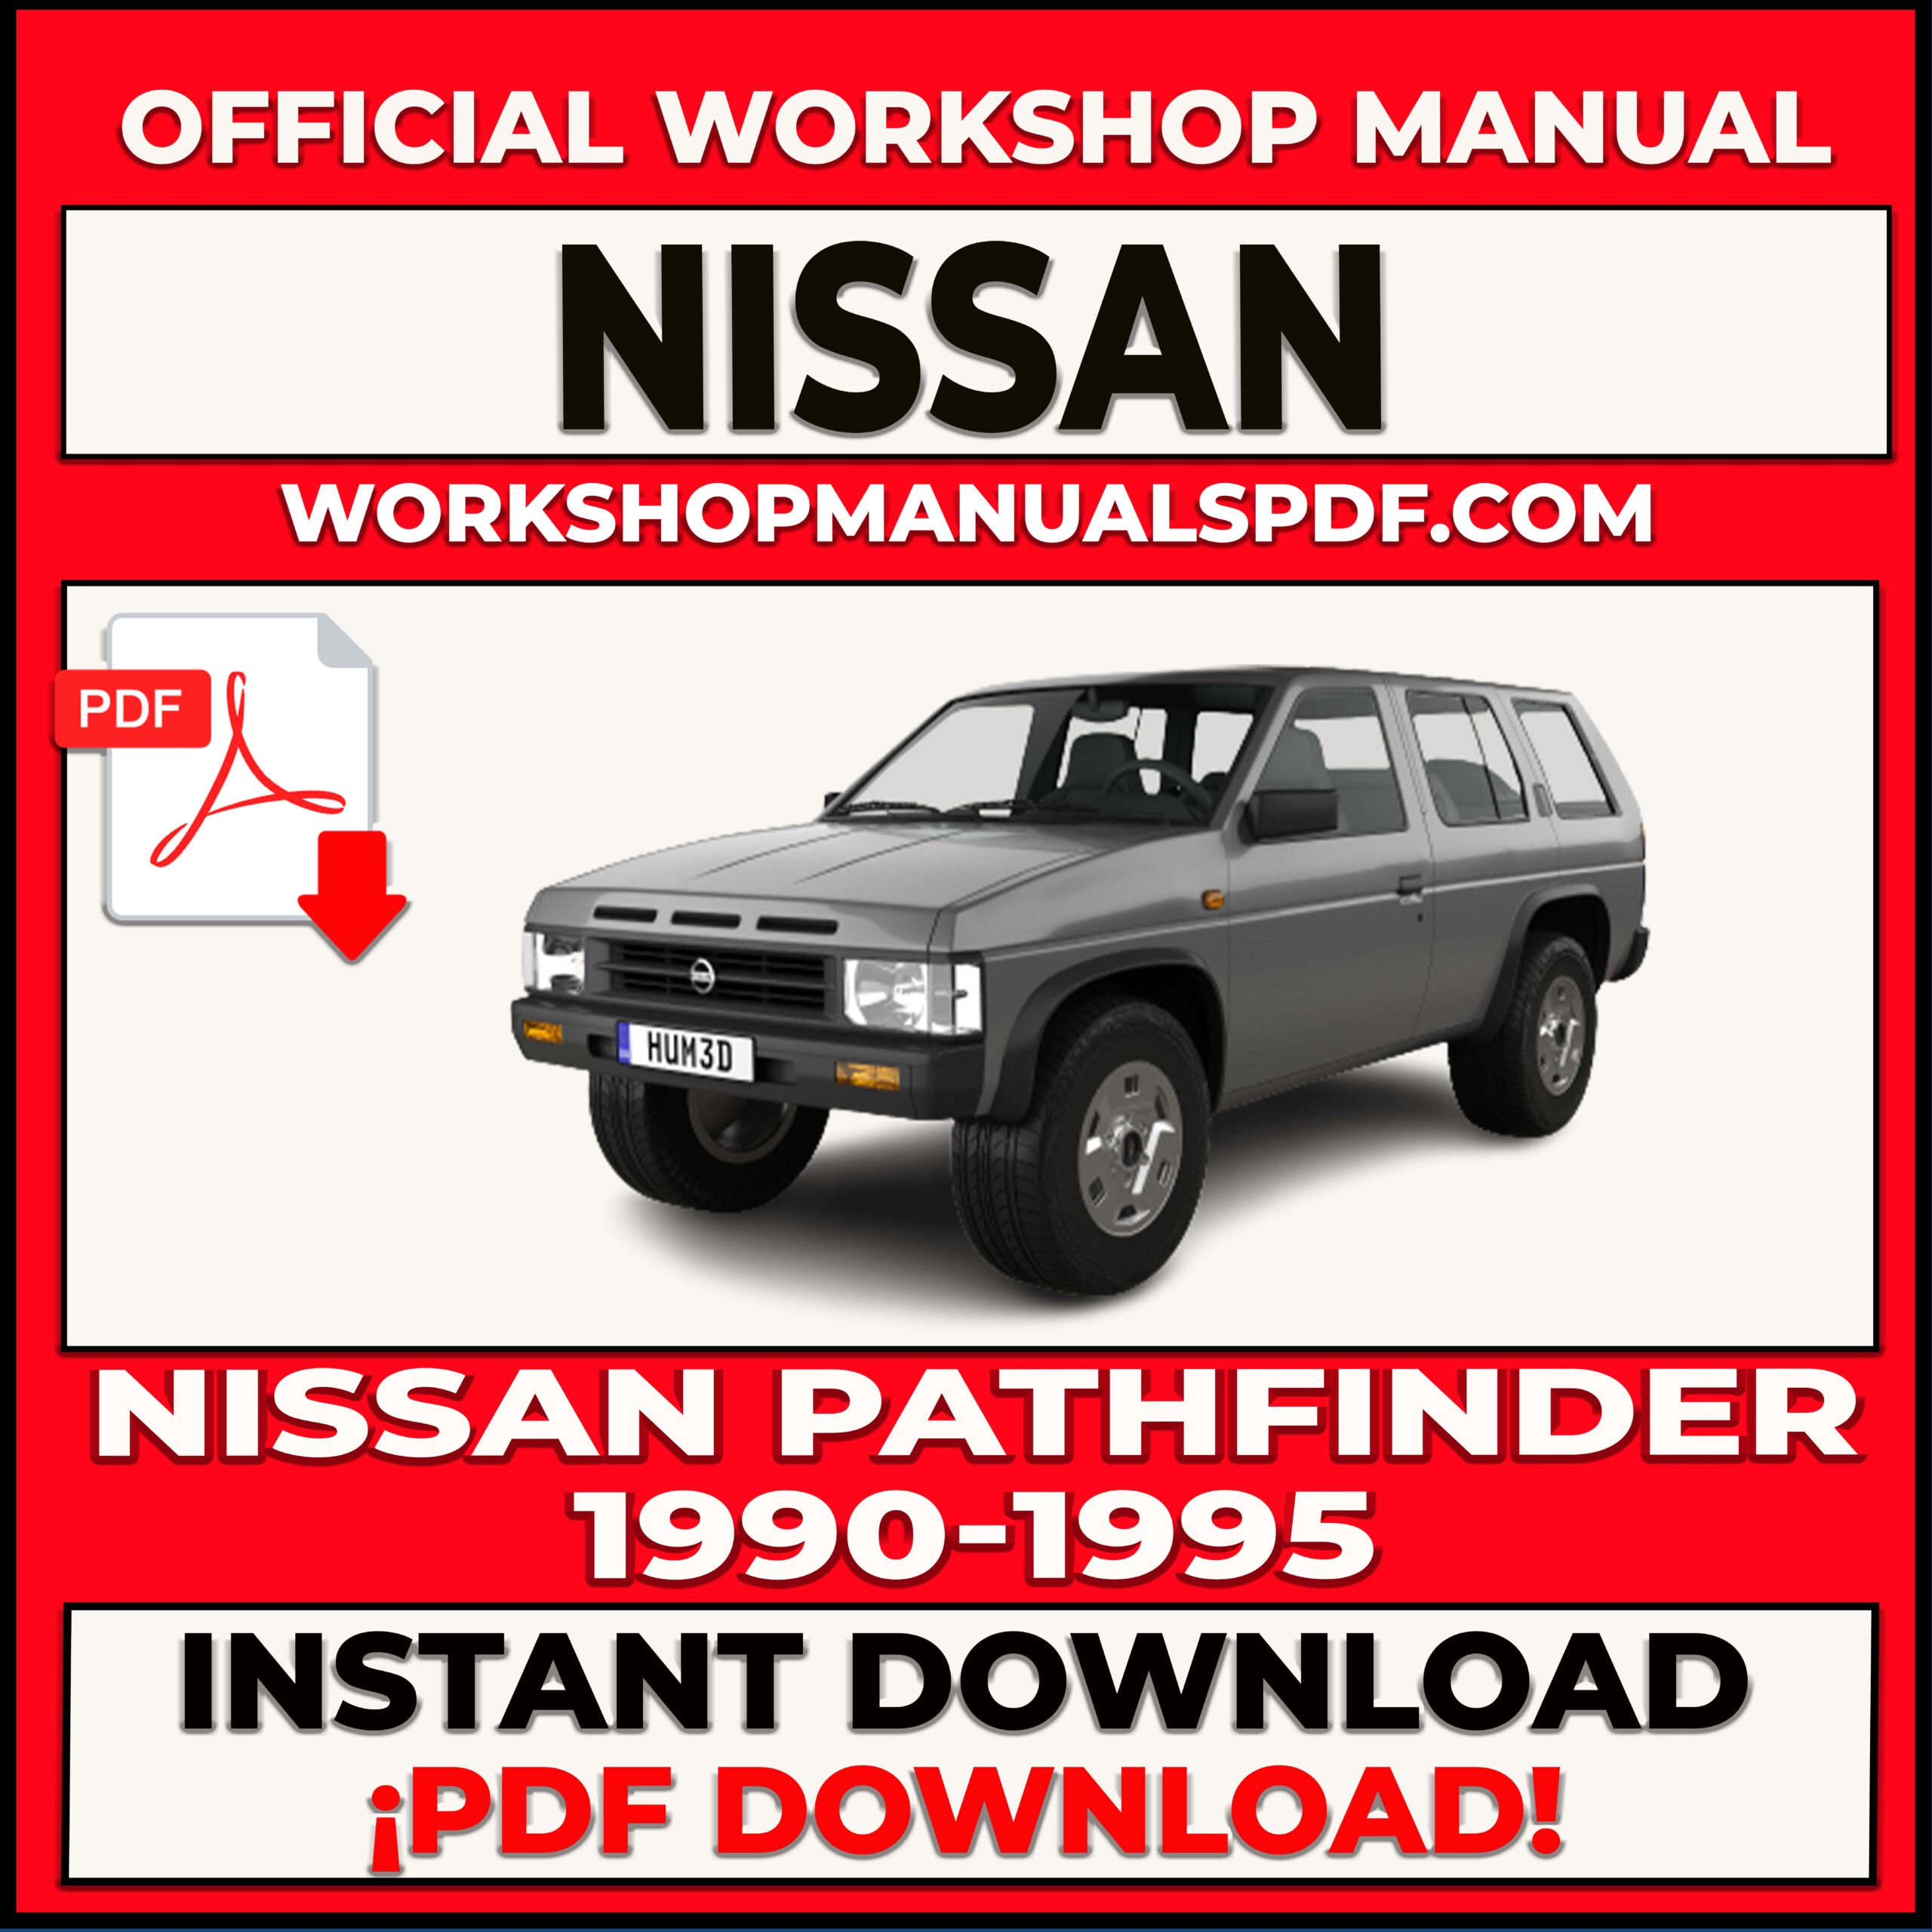 Nissan Pathfinder 1990-1995 Workshop Repair Manual